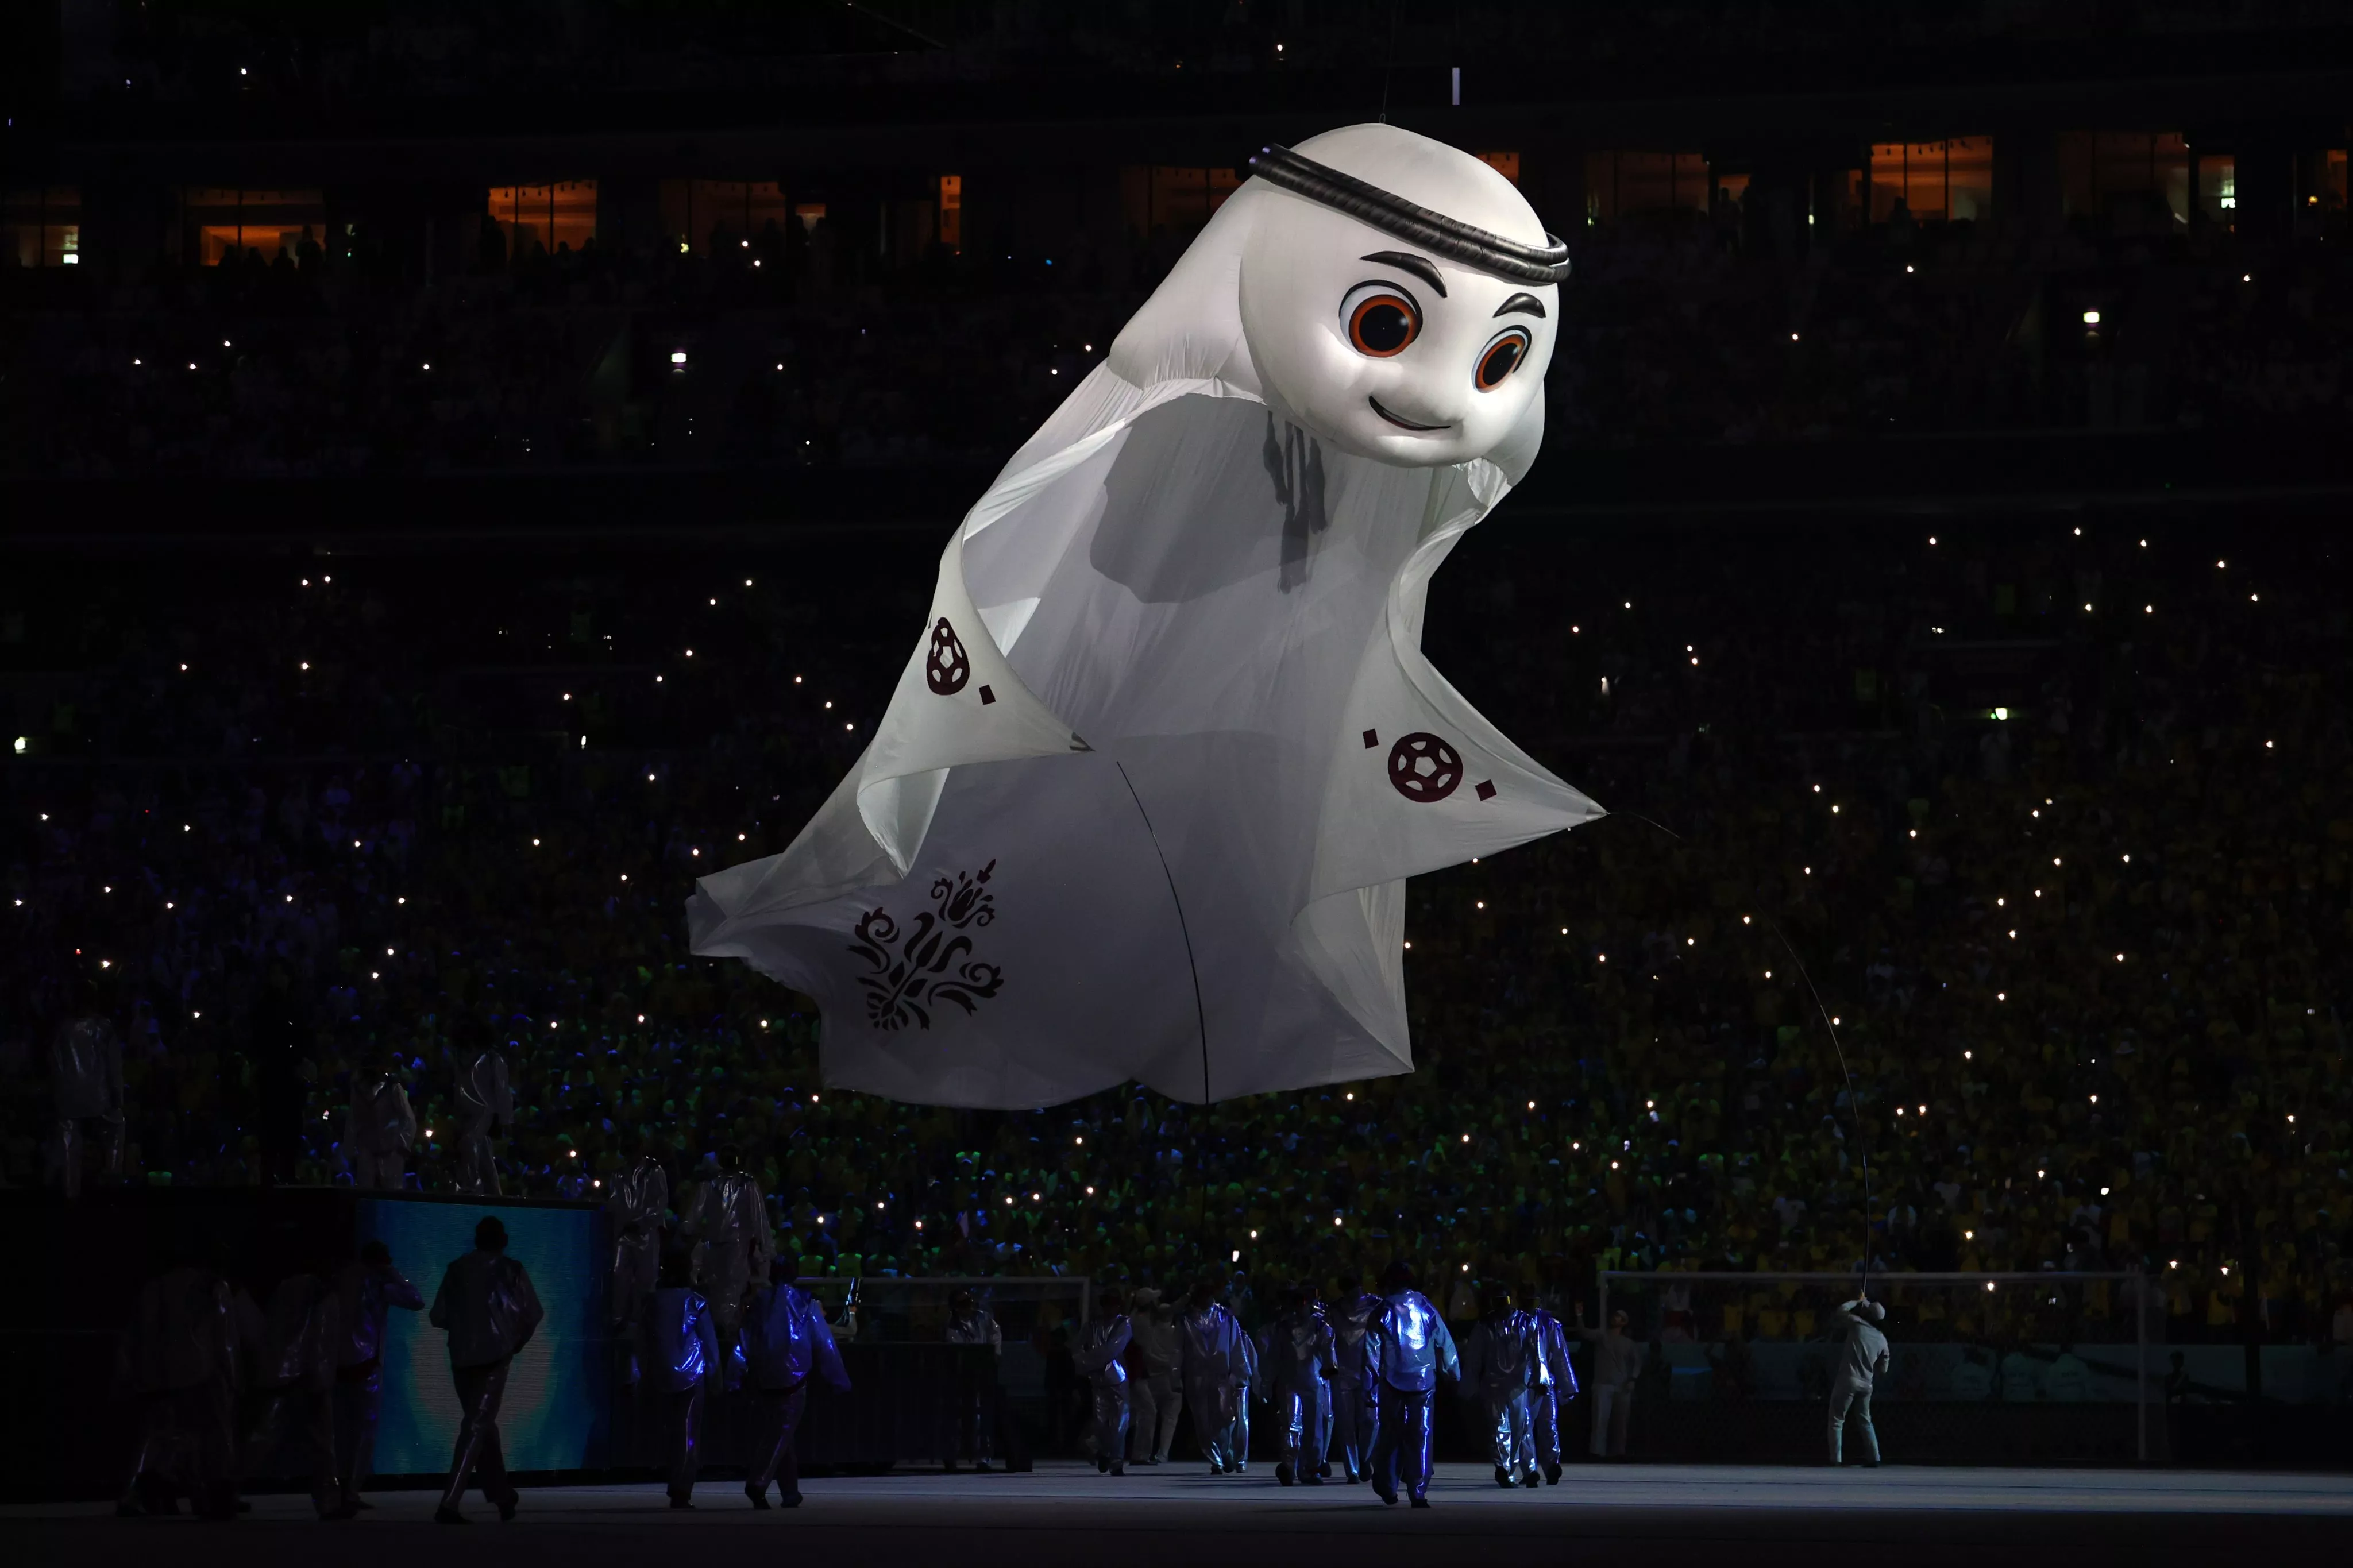 افتتاح كاس العالم قطر 2022: لحظات مبهرة ستدخل التاريخ